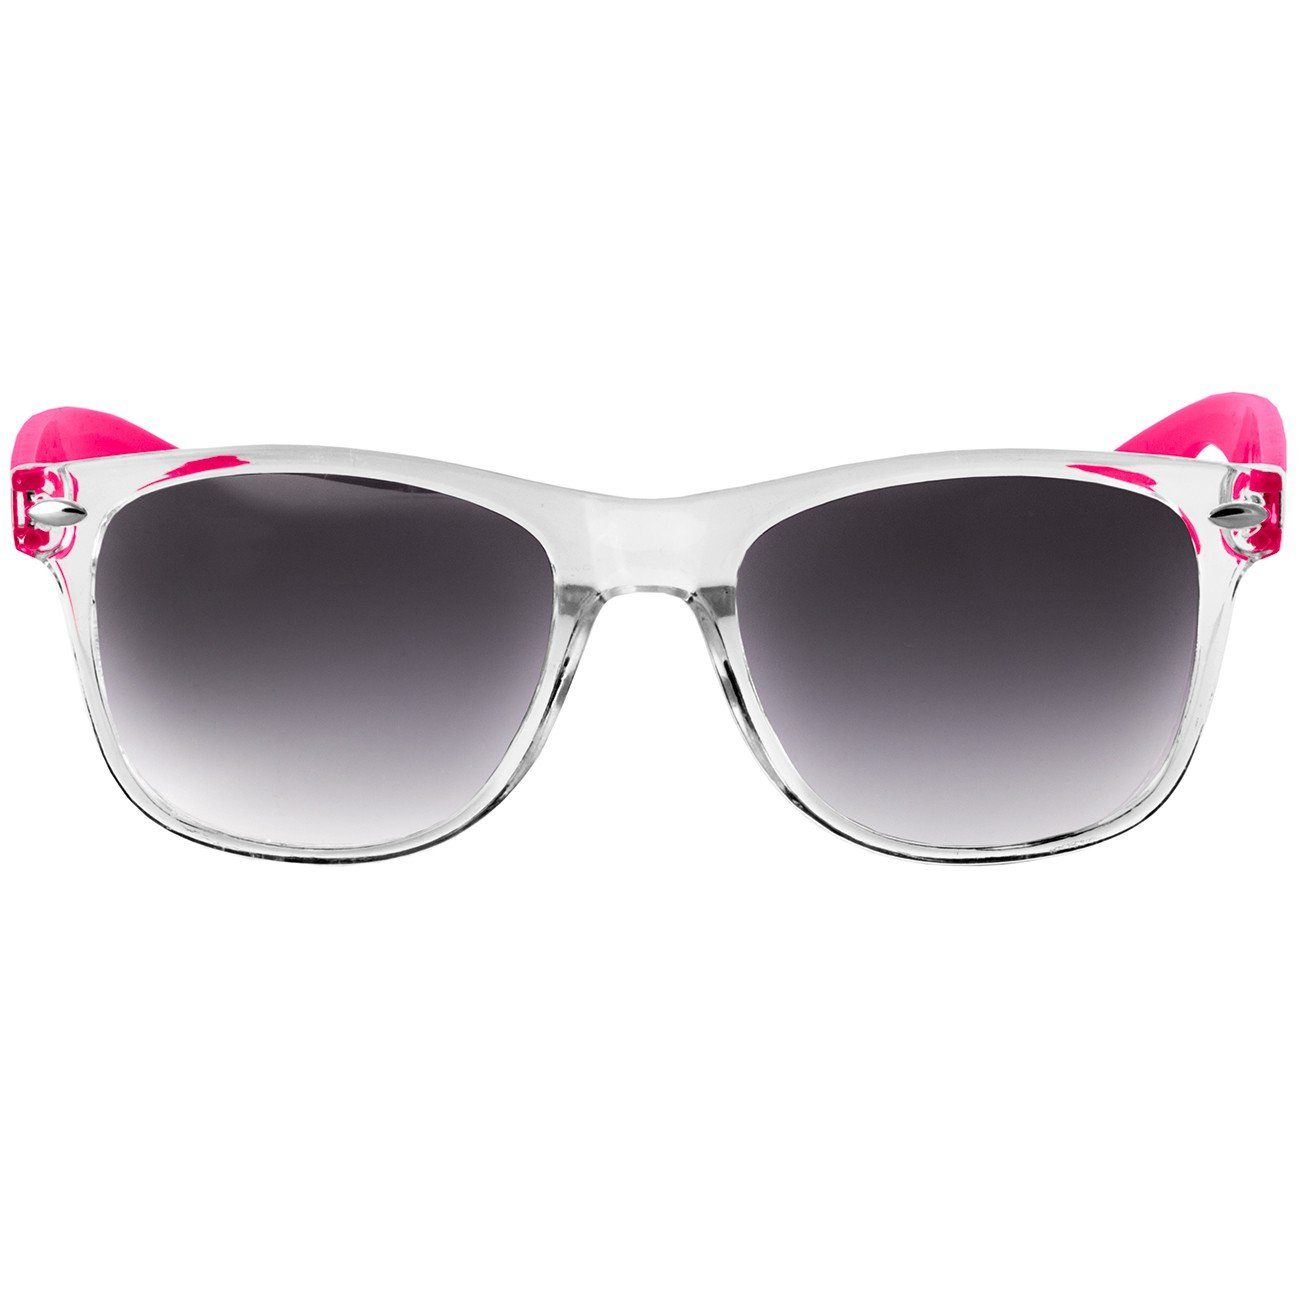 Damen RETRO pink / verspiegelt Caspar Sonnenbrille SG017 Designbrille blau